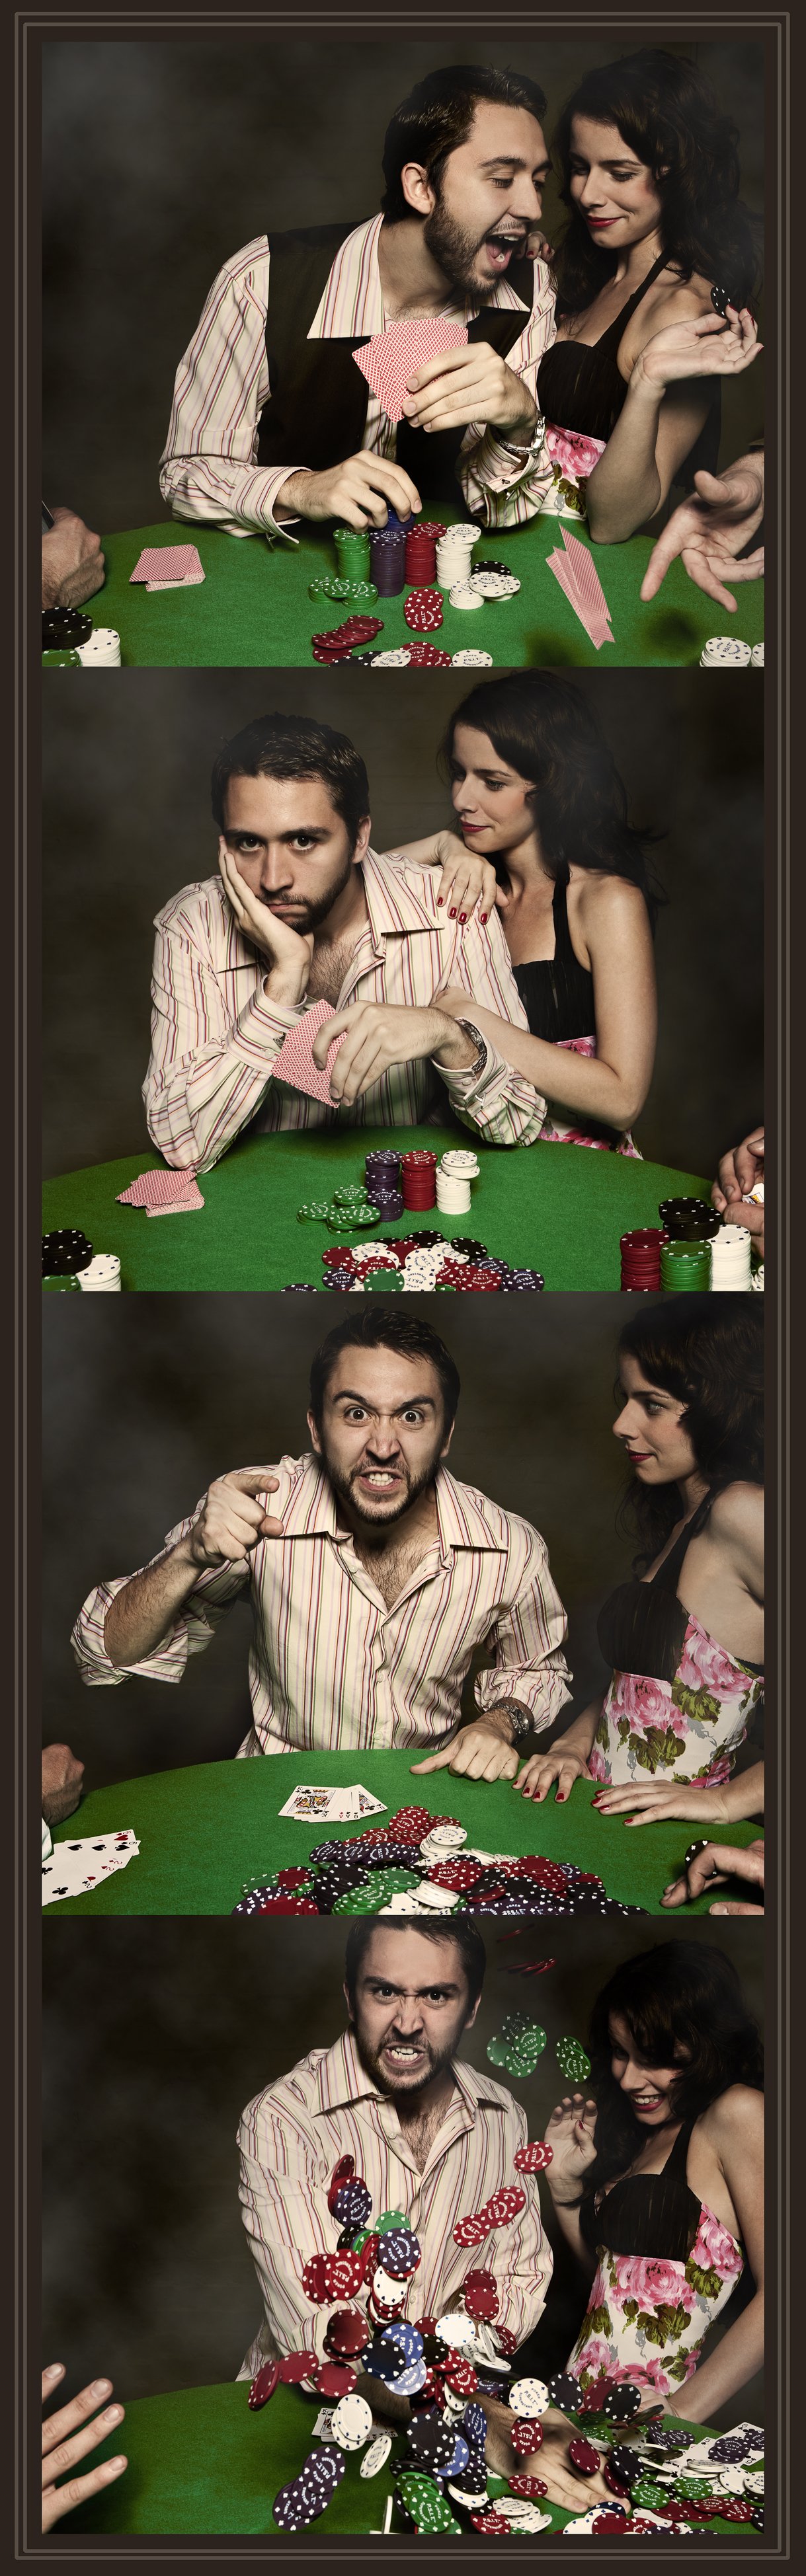 Poker Player Comp.jpg